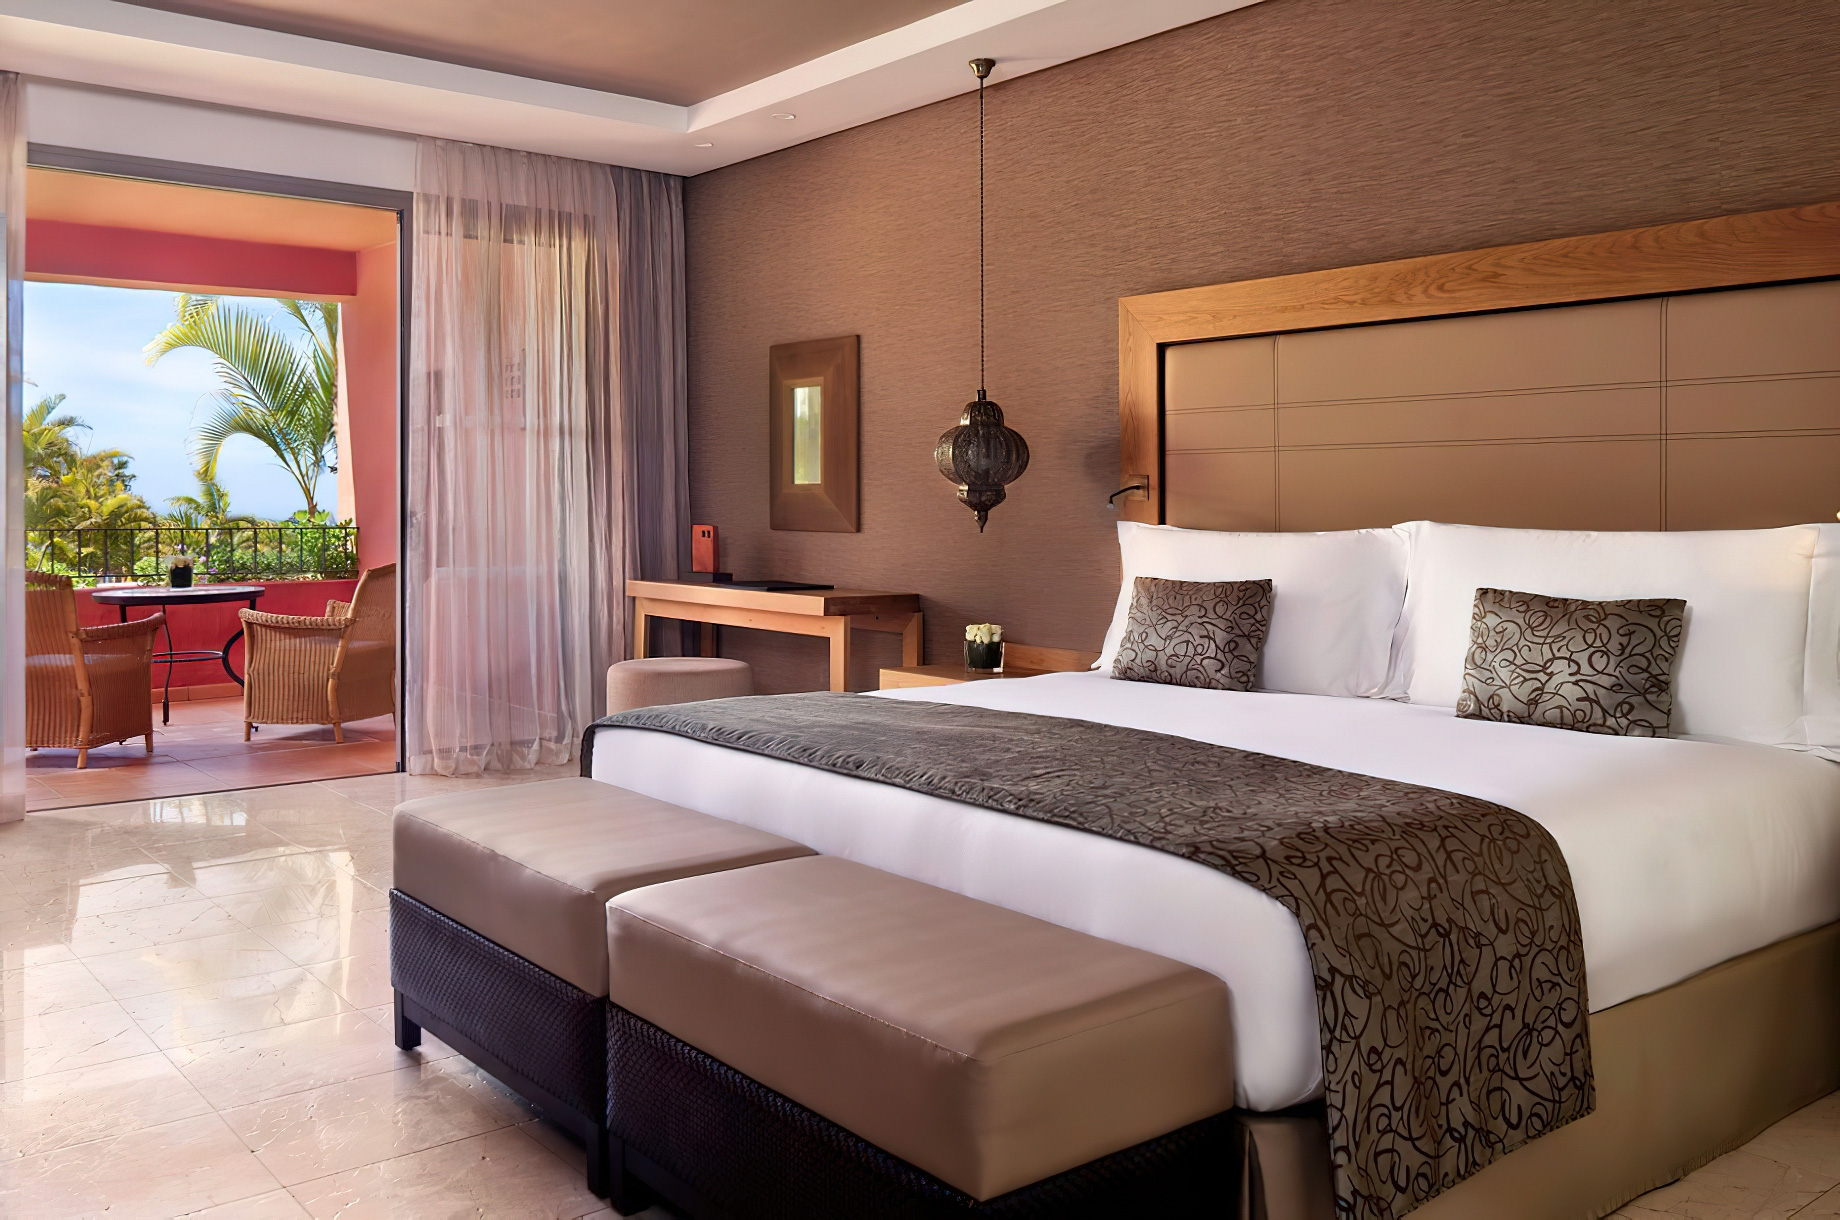 The Ritz-Carlton, Abama Resort - Santa Cruz de Tenerife, Spain - Citadel Junior Suite Bedroom Corner